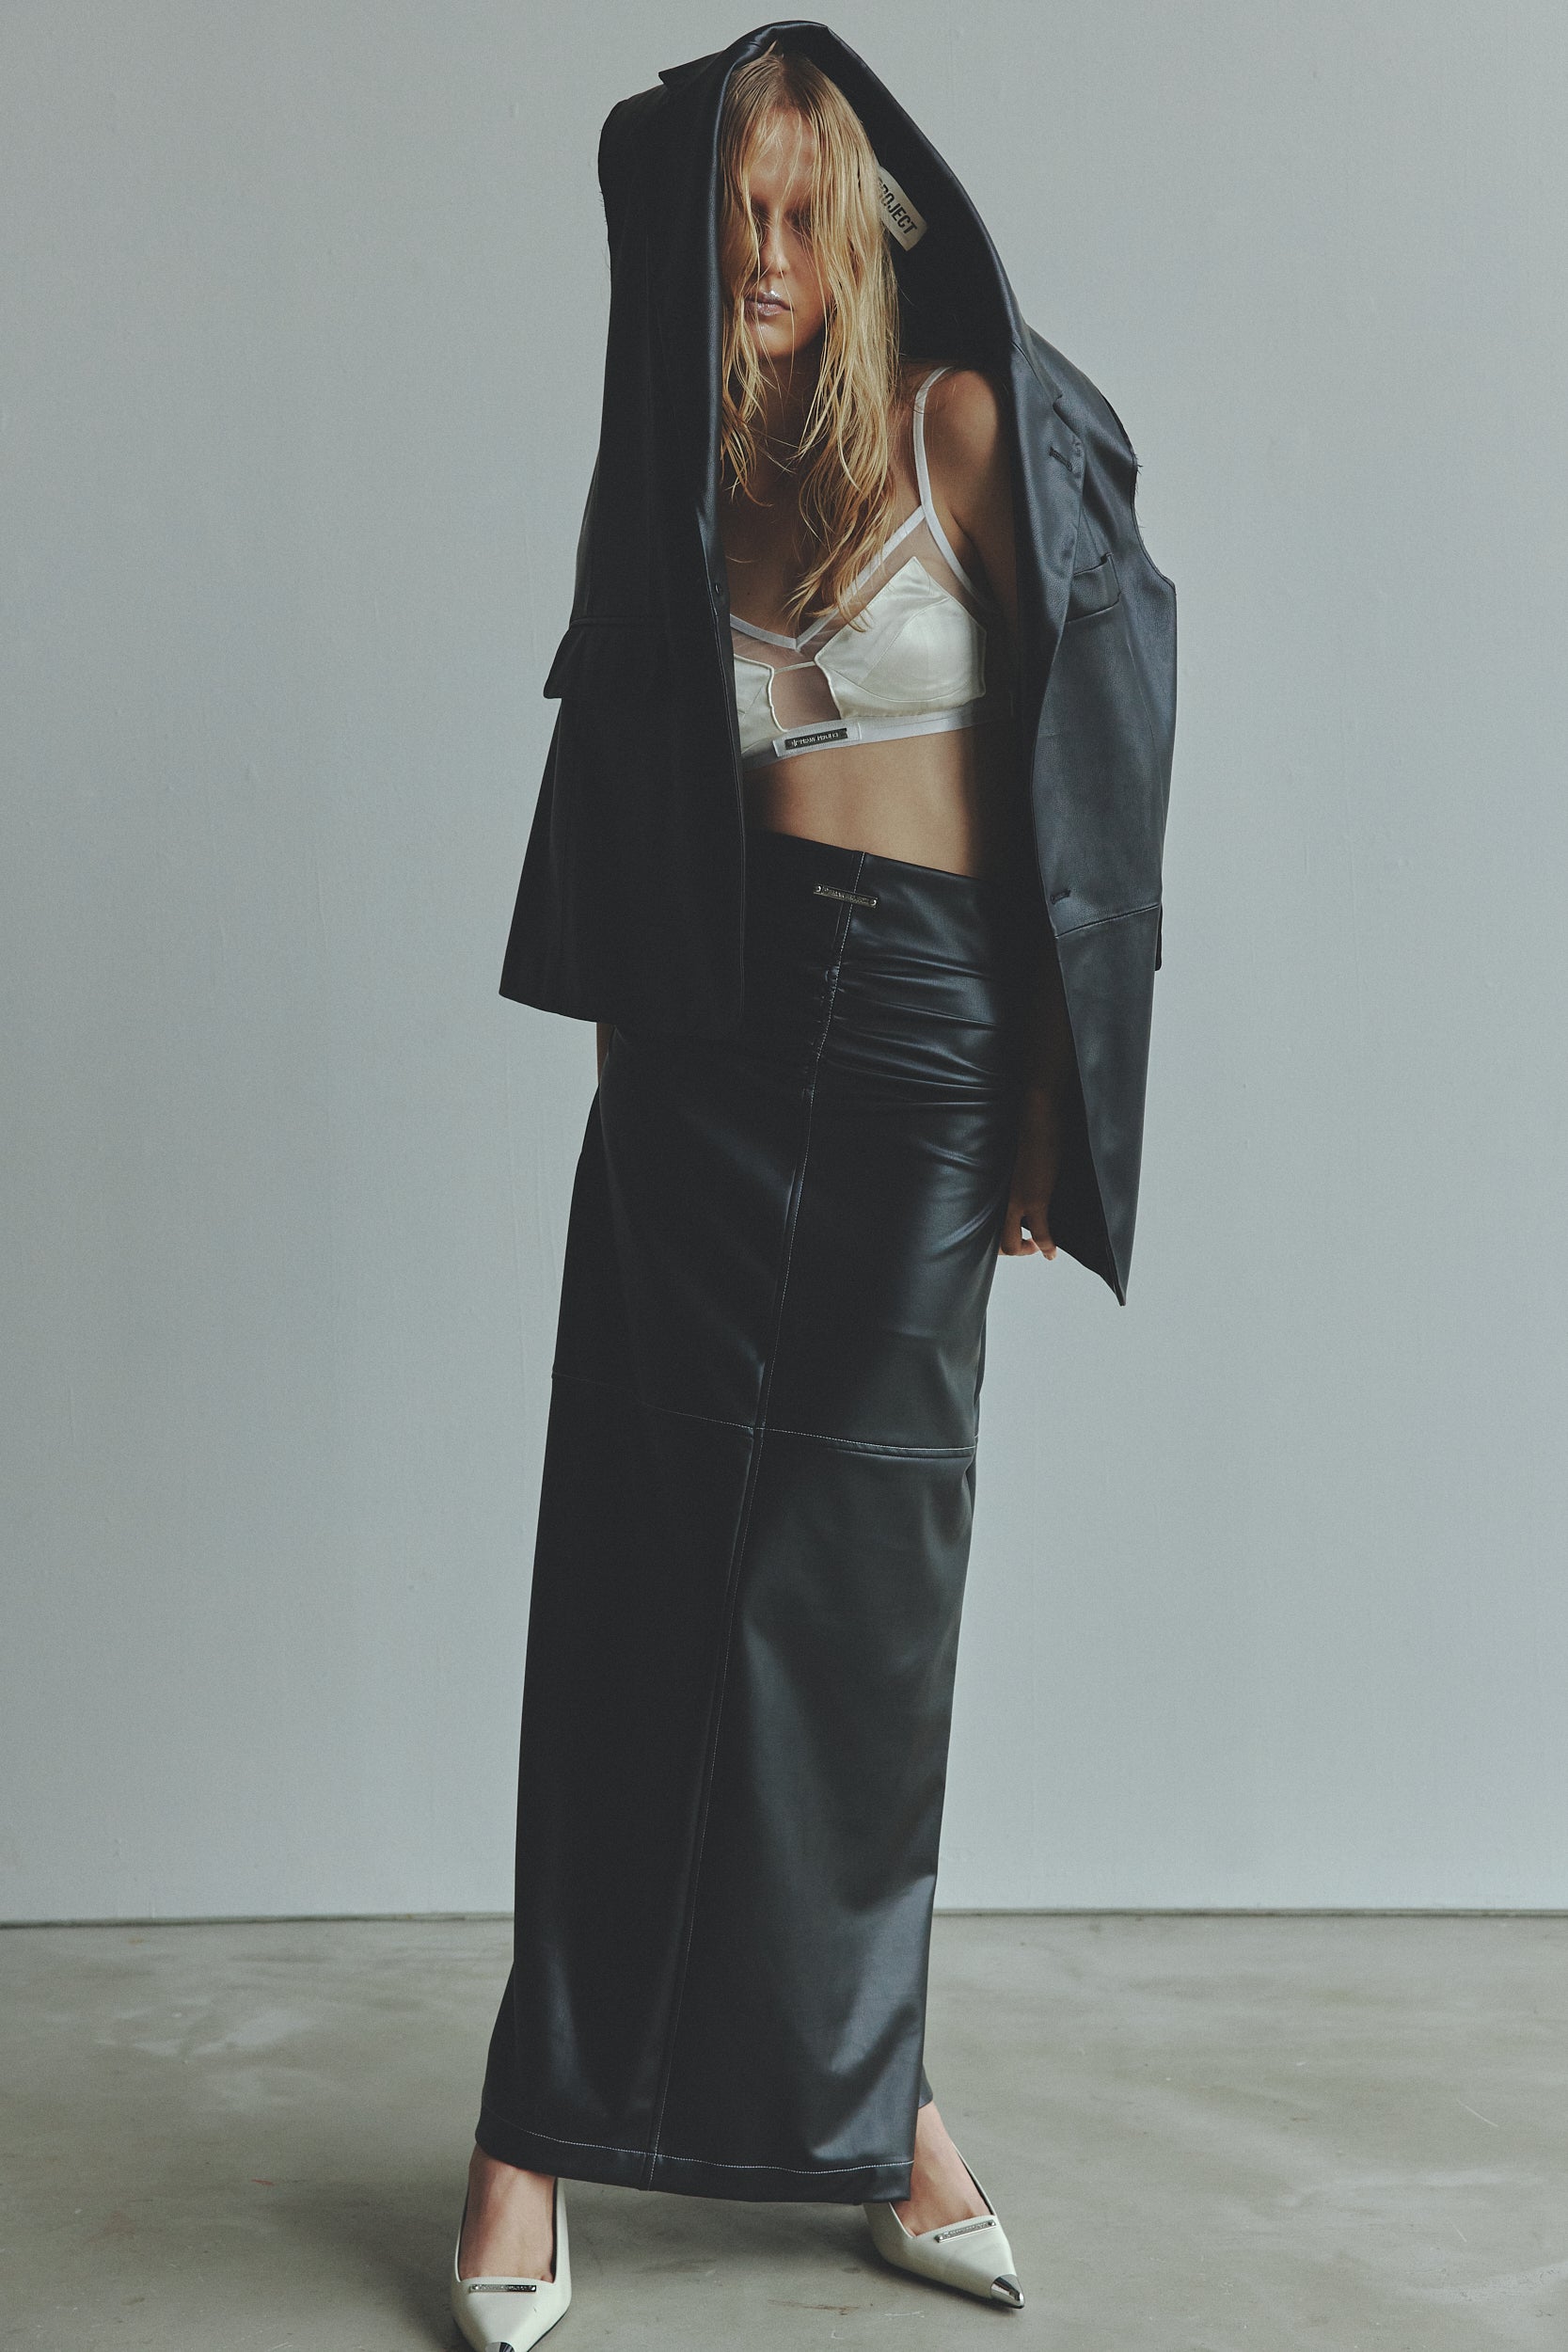 レディースArtificial Leather Maxi Skirt